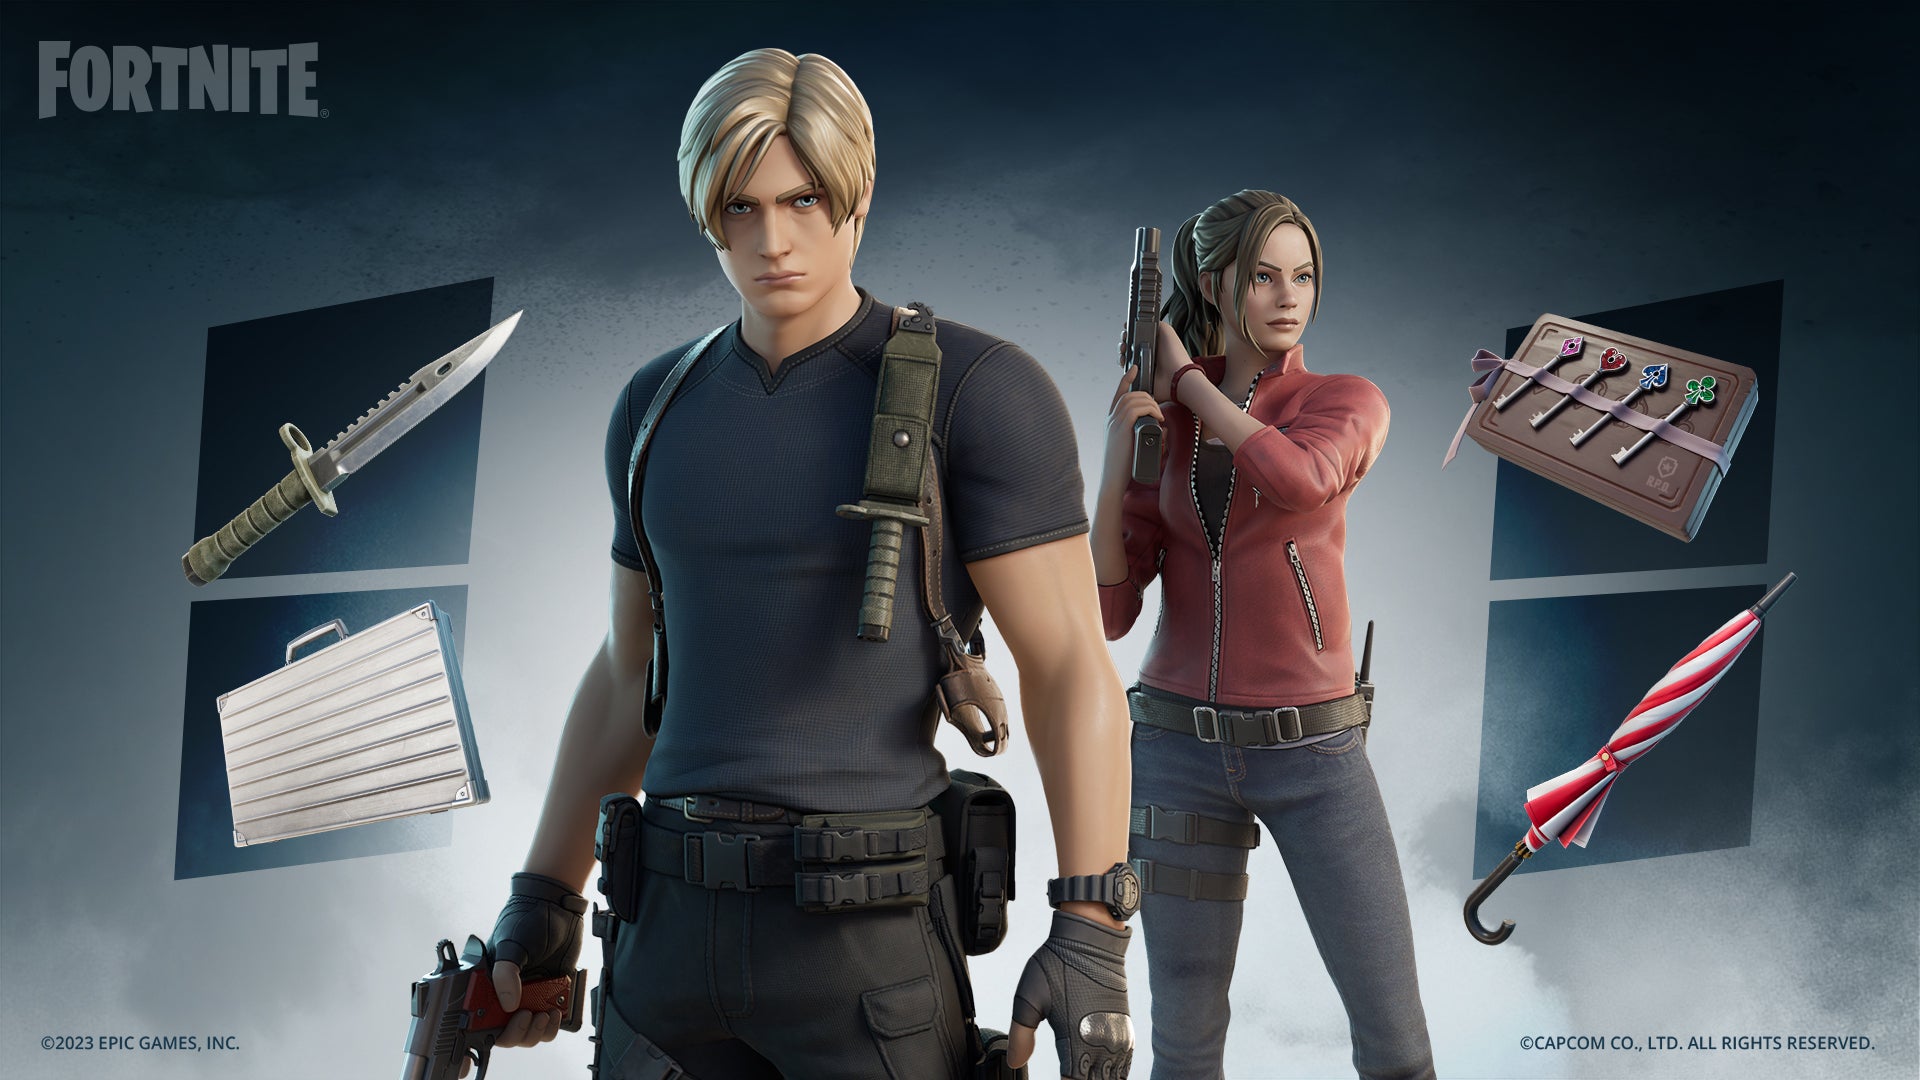 Leon van Resident Evil 4 arriveert in Fortnite, maar zonder zijn stijlvolle jas